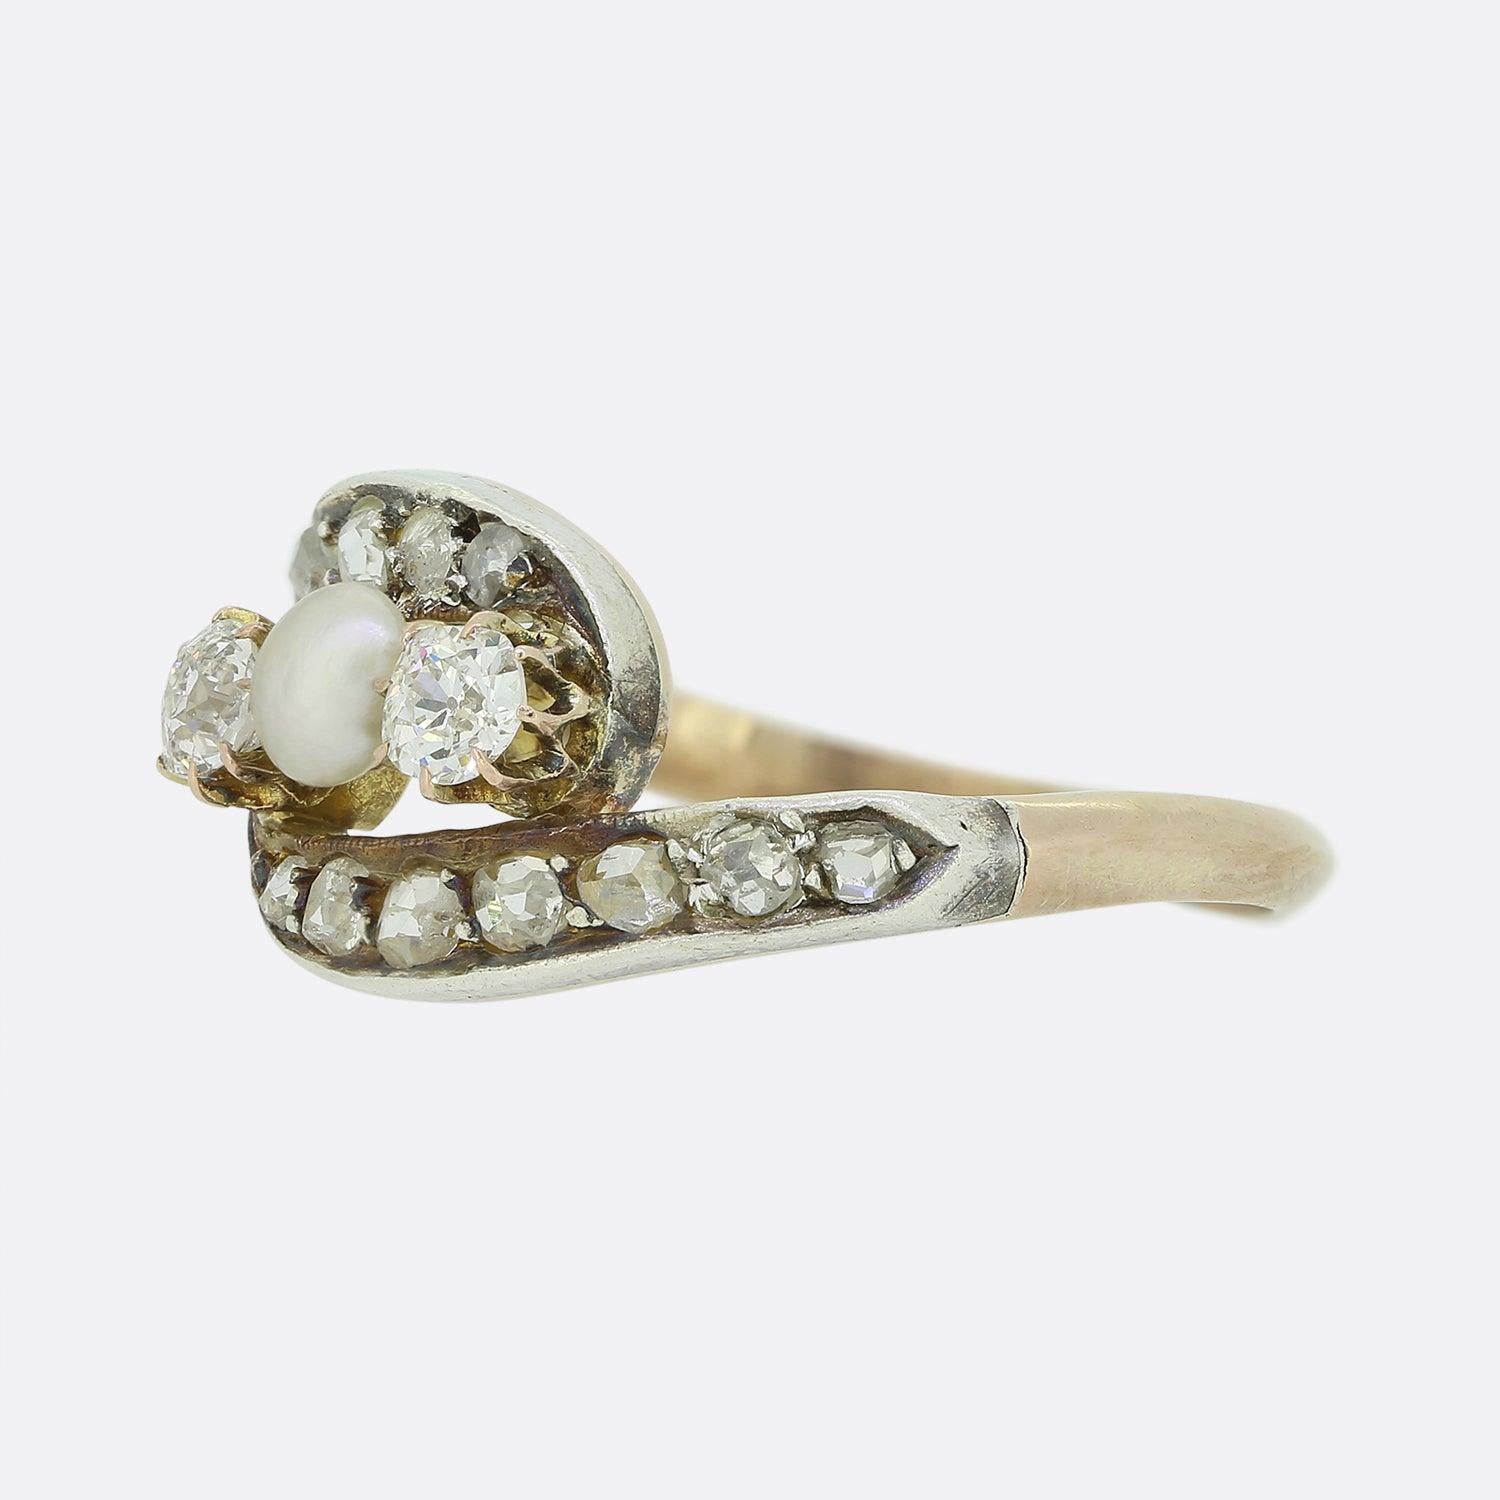 Hier haben wir einen bezaubernden Crossover-Ring mit Perlen und Diamanten aus der viktorianischen Ära. Die gewirbelte Vorderseite des Rings zeigt zwei altgeschliffene Diamanten und eine natürliche Perle in der Mitte, mit einem Hintergrund aus in